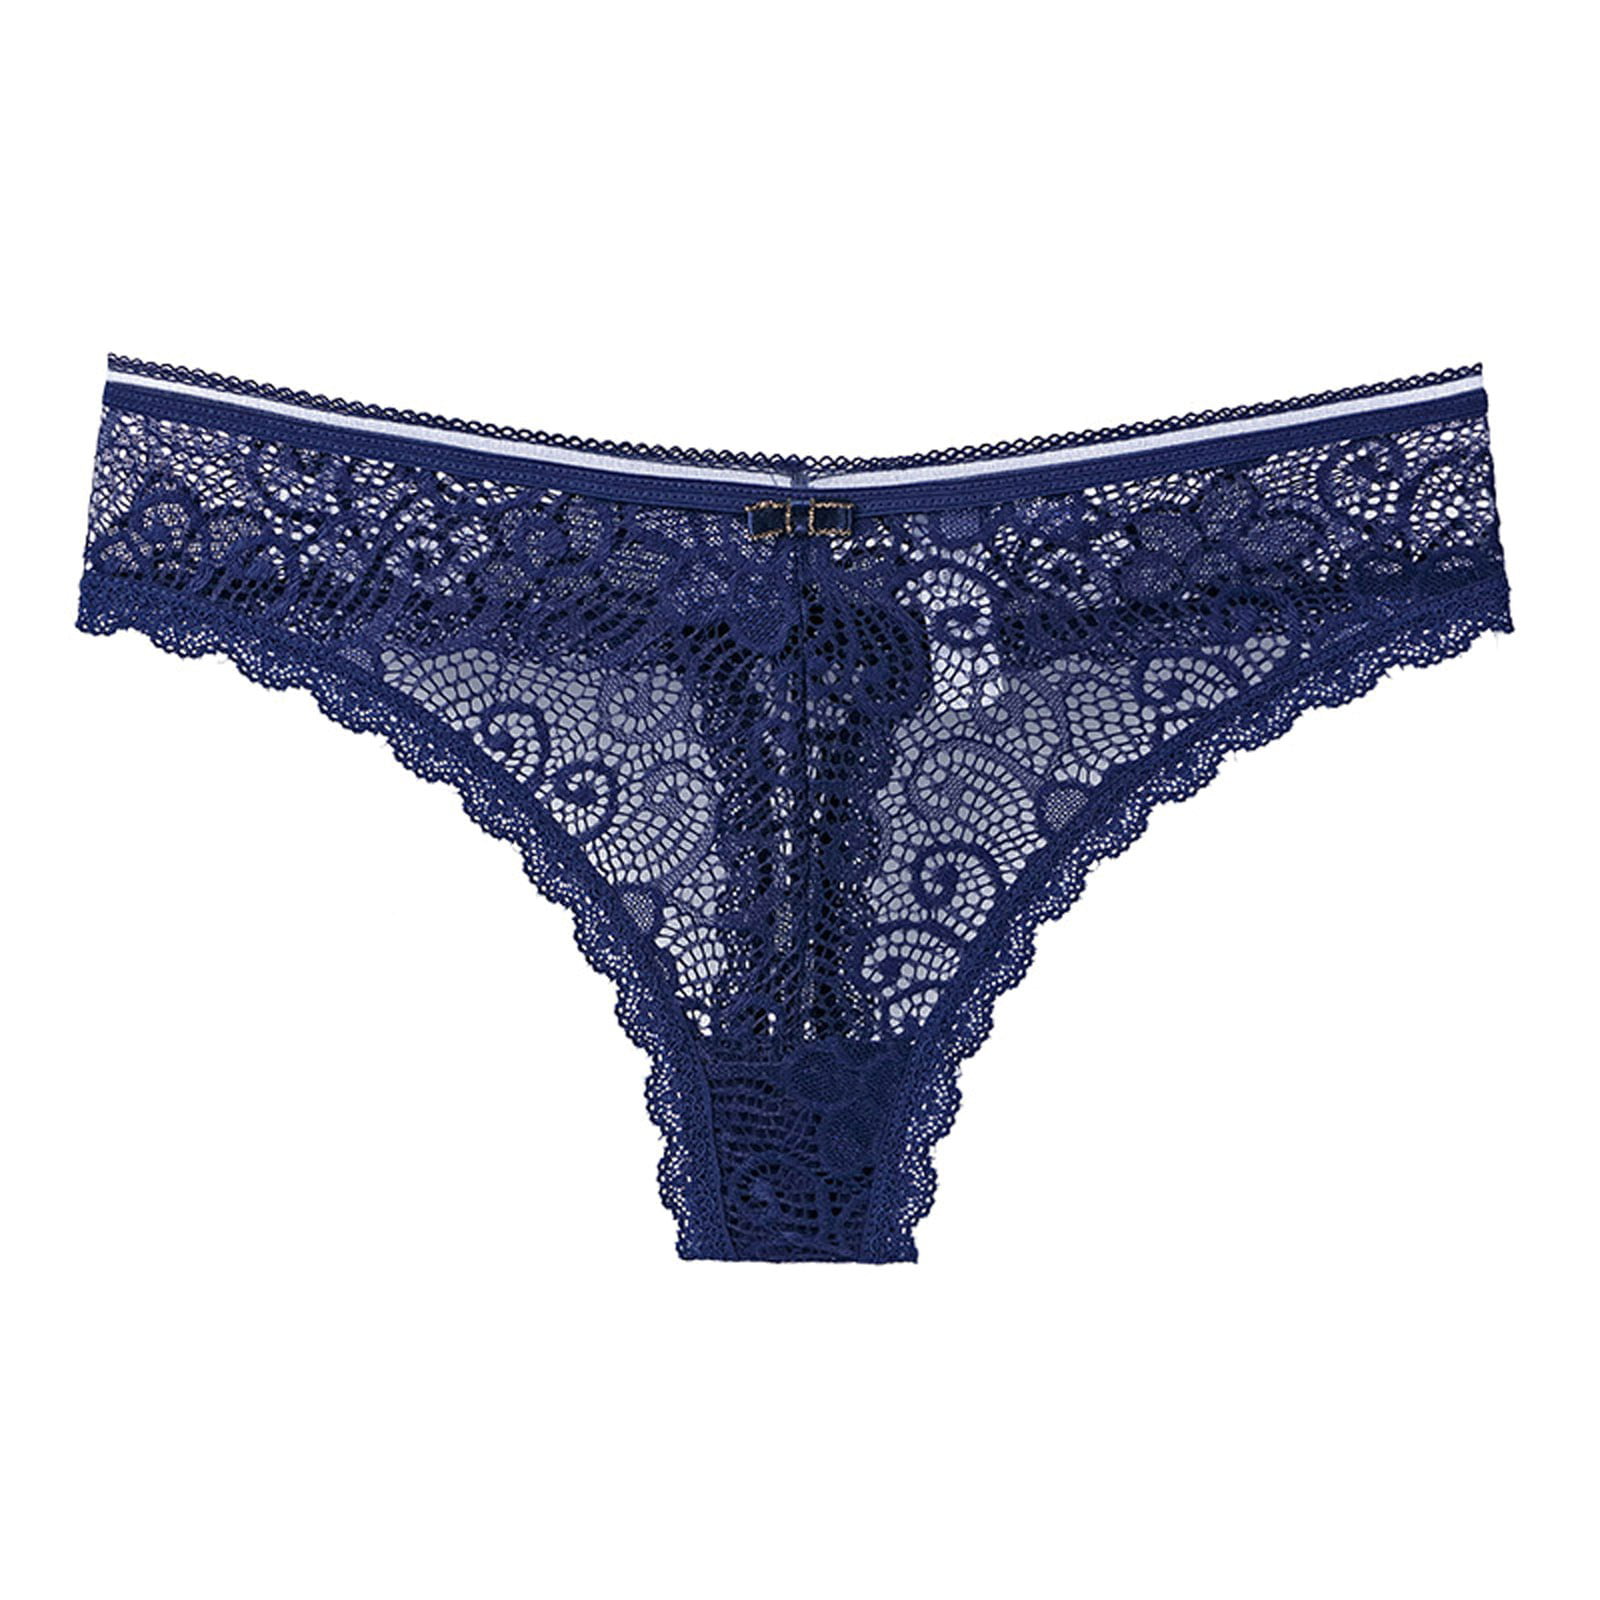 UDAXB Womens Underwear Women Flowers Lace Panties Underwear Knicker ...